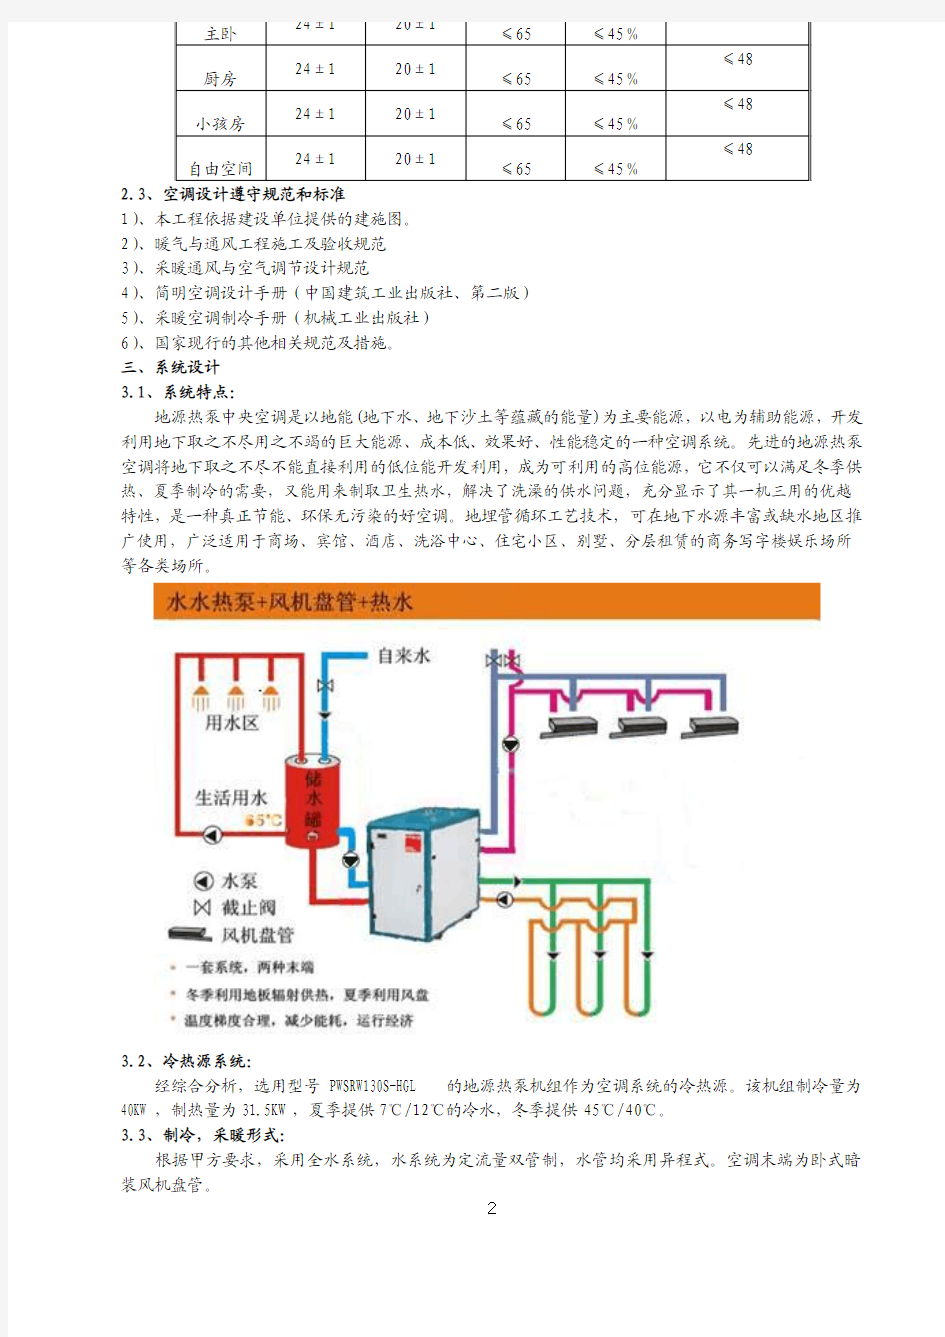 廖汉光 地源热泵(带热回收)中央空调在长沙别墅中的应用(5月份中国制冷网)